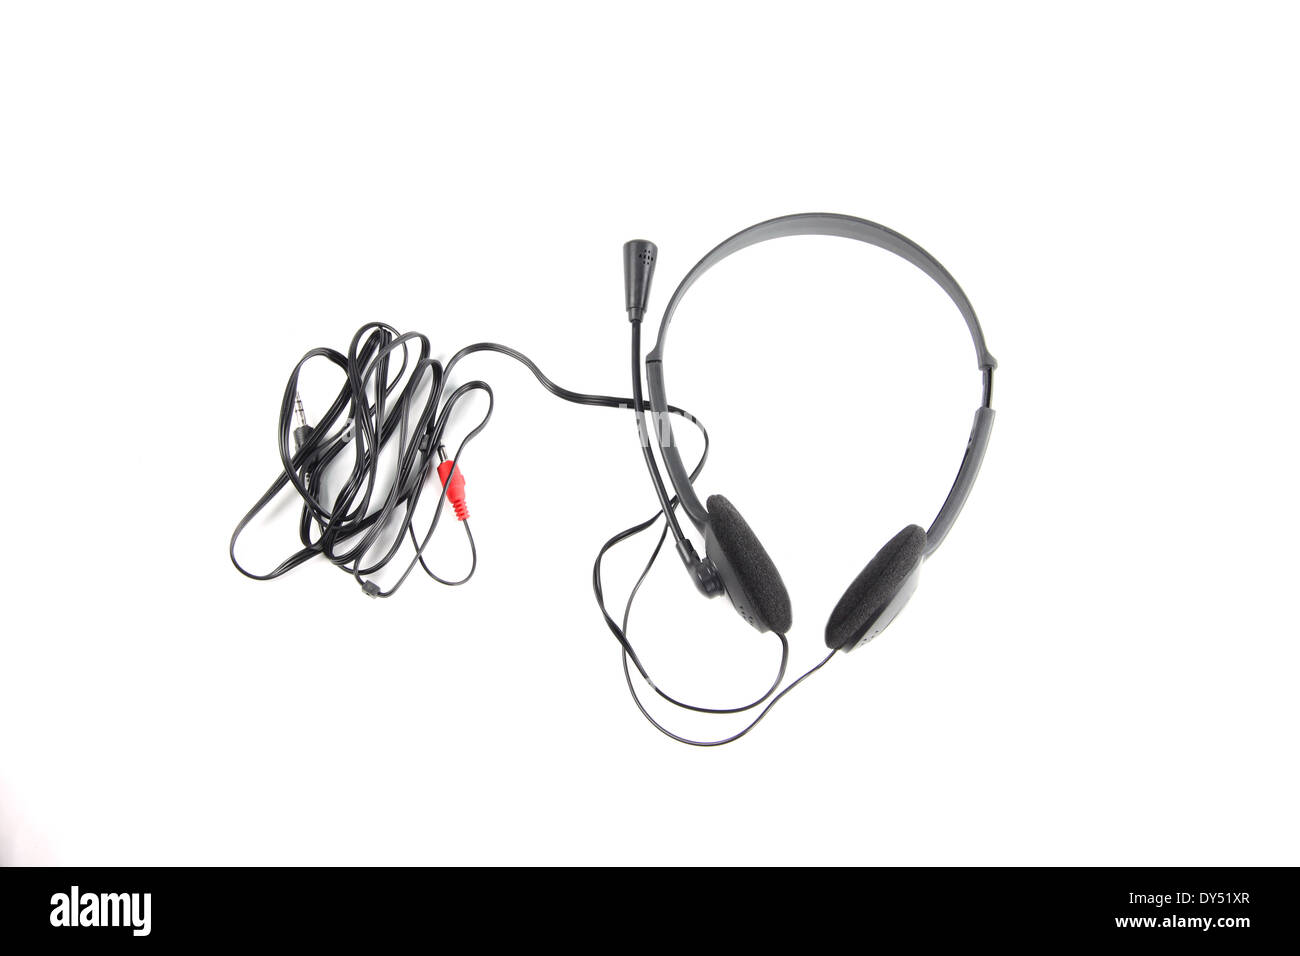 black headphone isolated on white background. Stock Photo